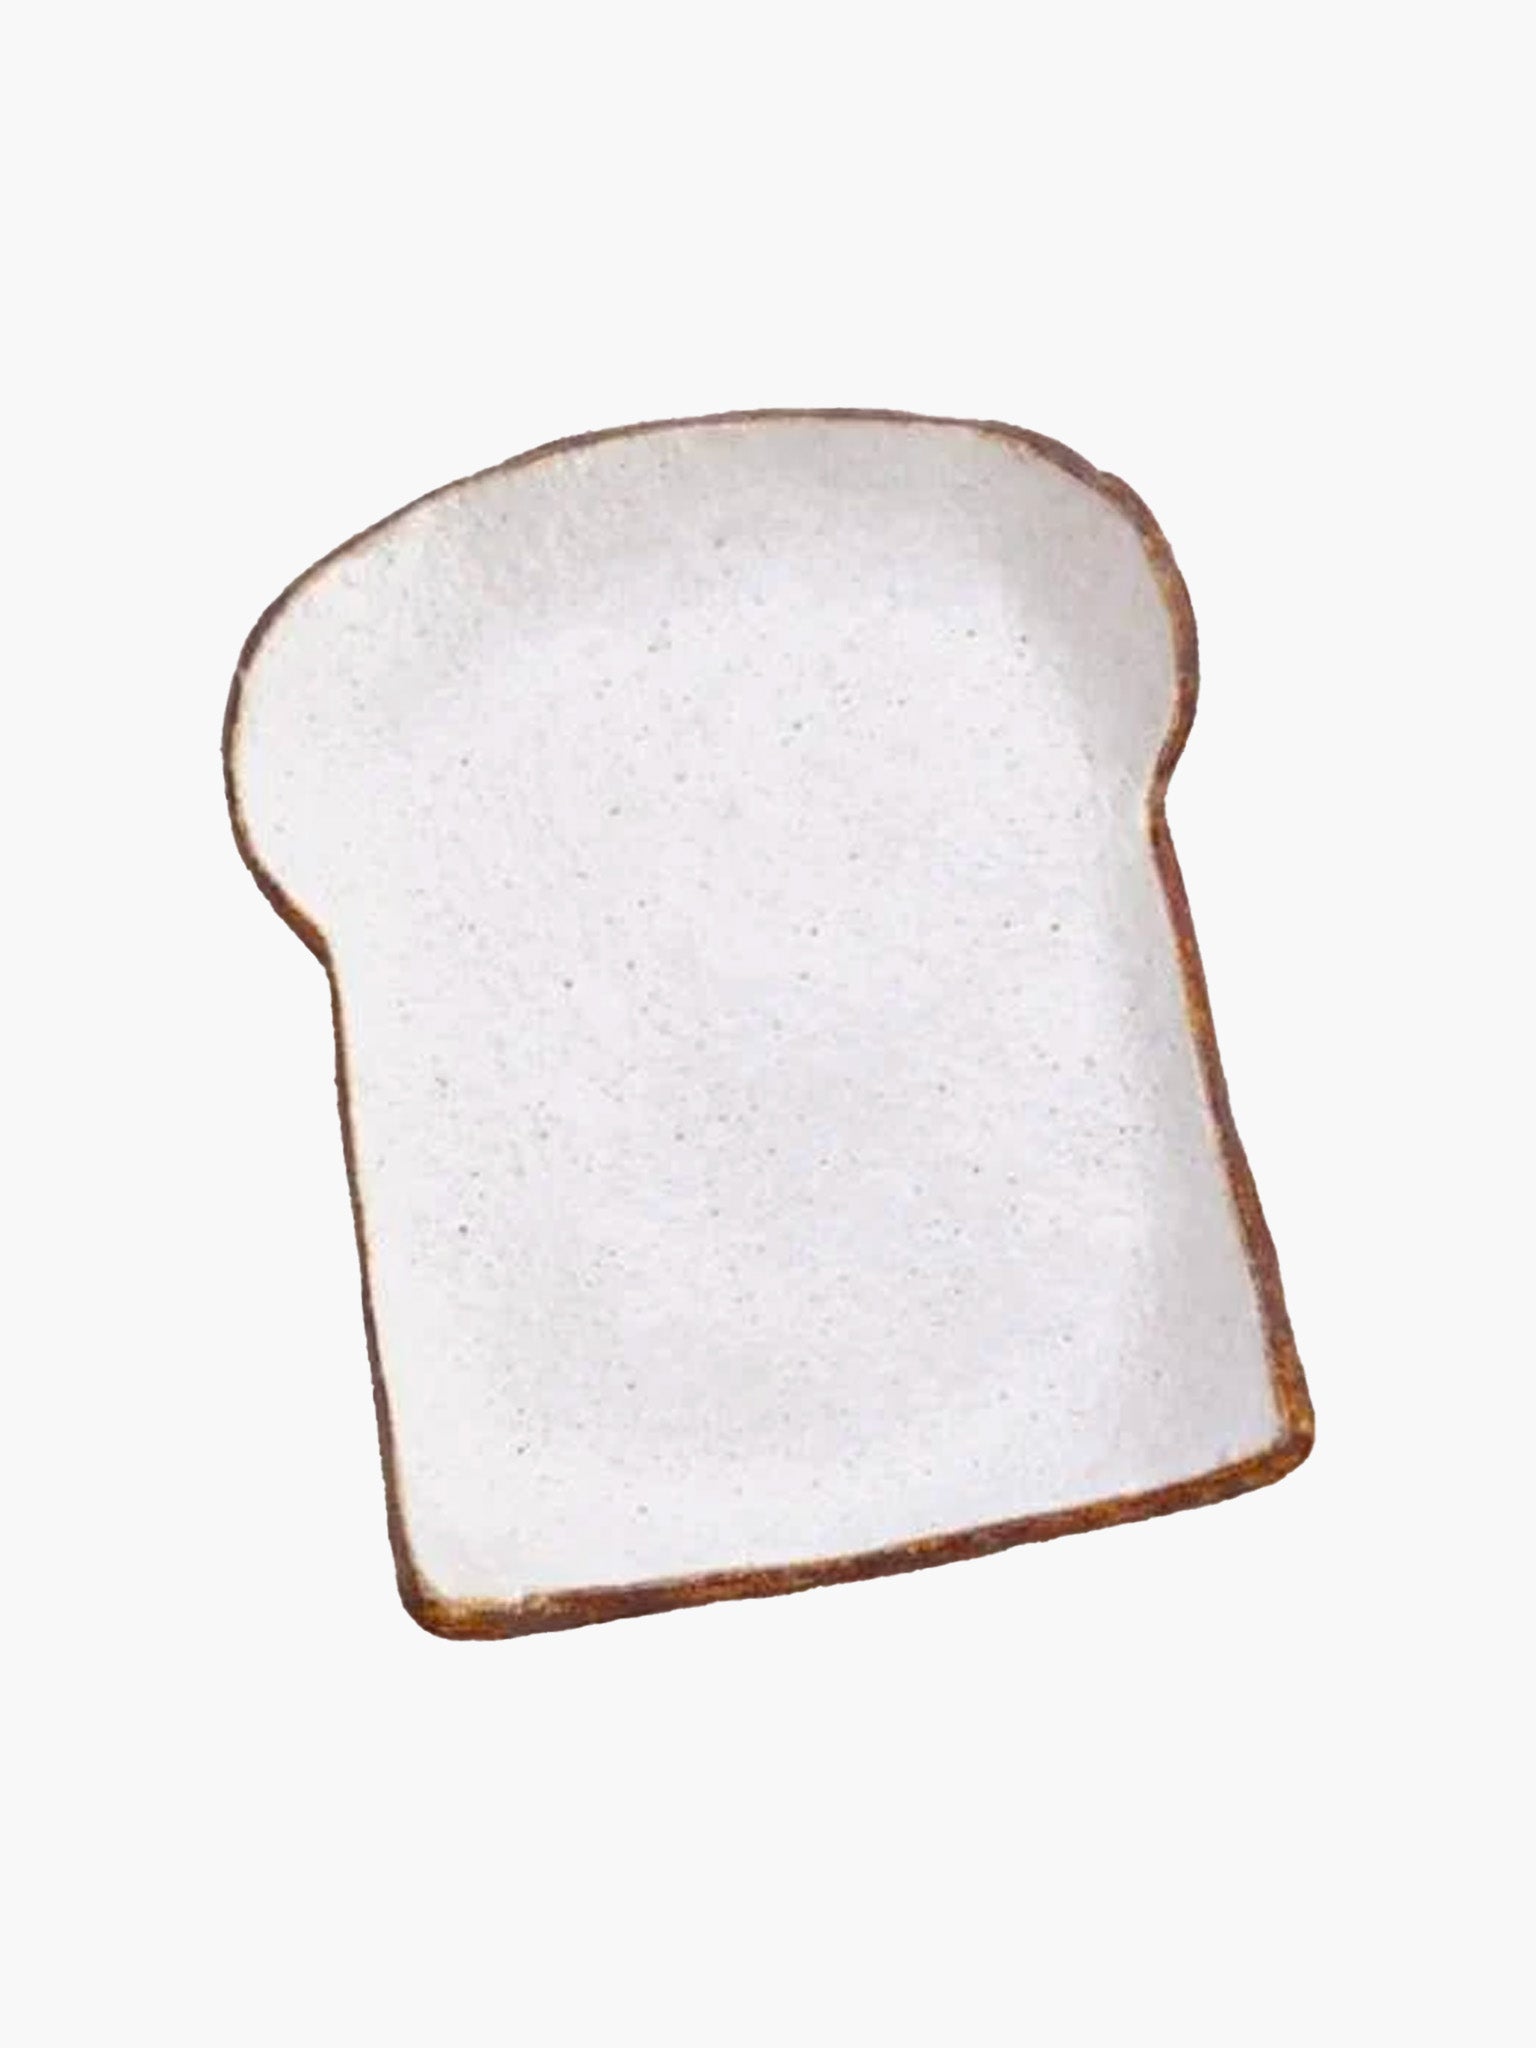 Bread Slice Ceramic Plate (14cm)